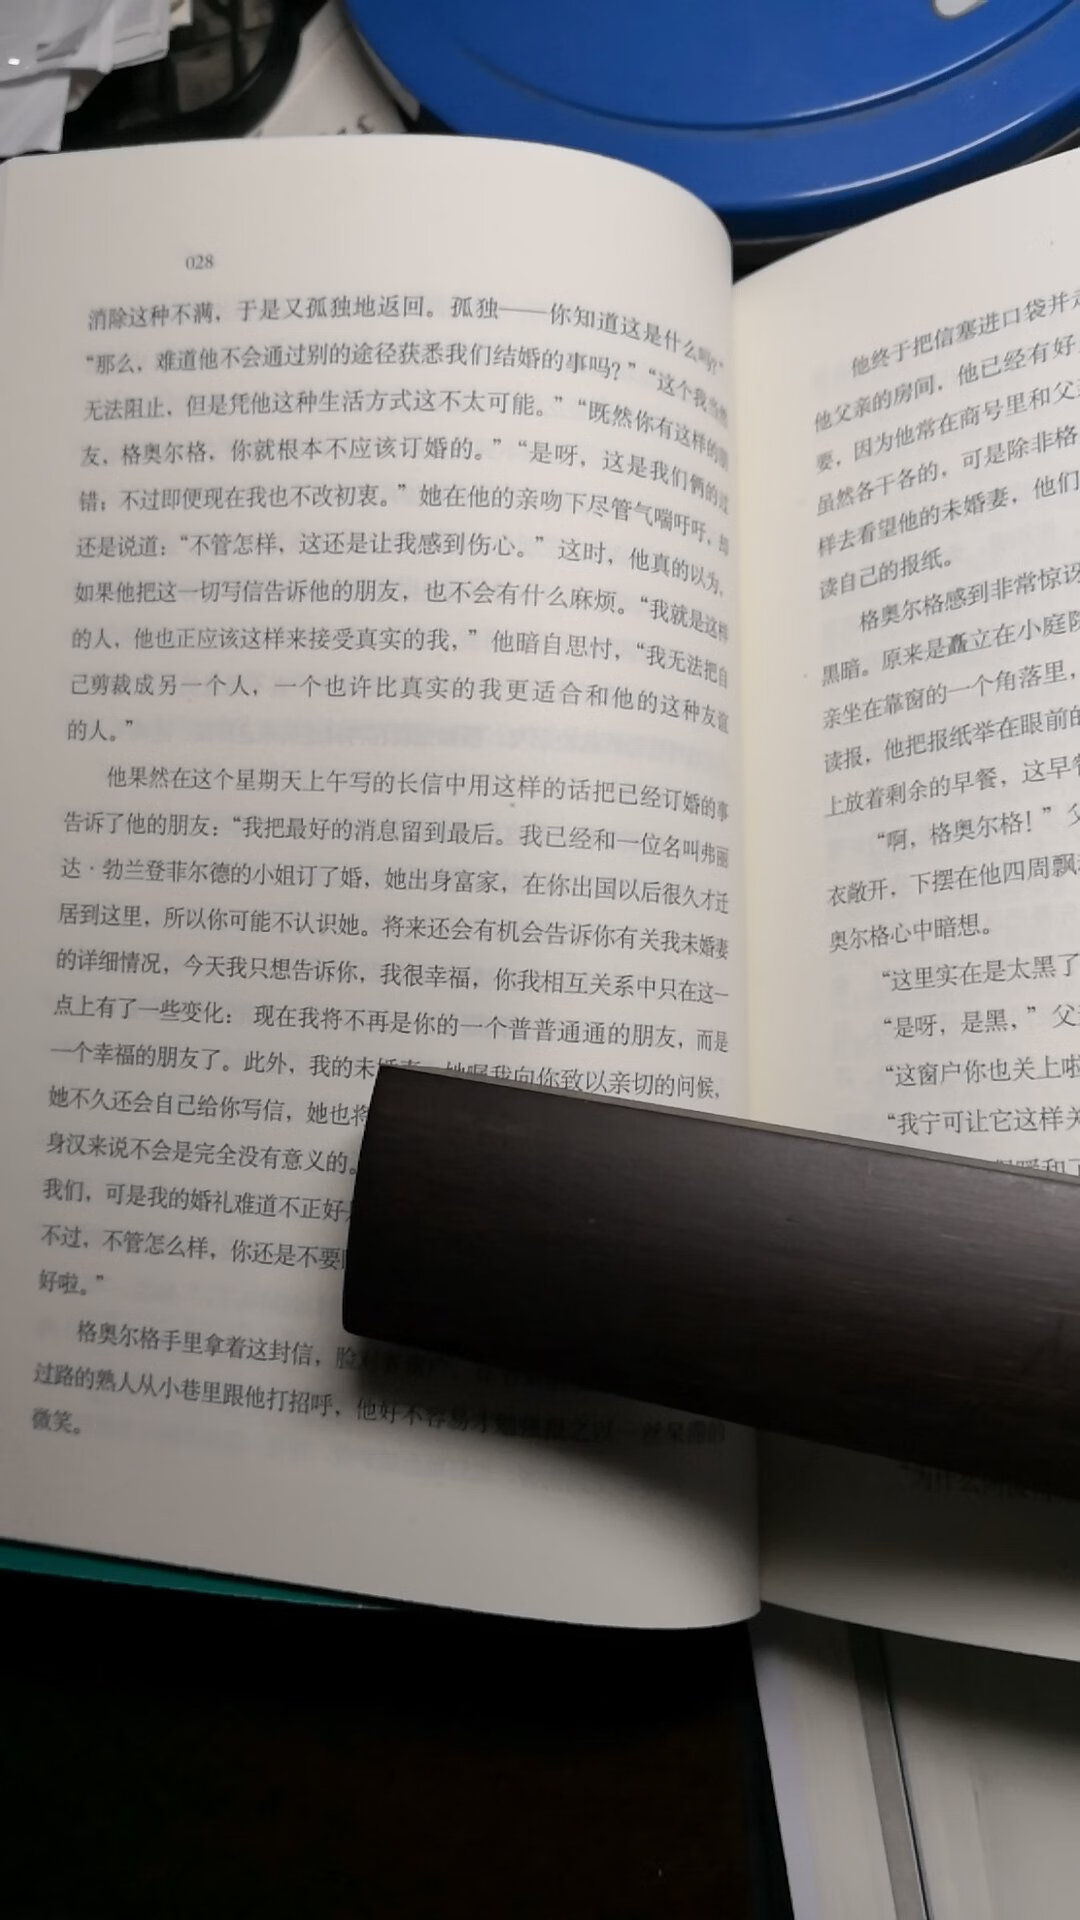 之前对上海译文出版社的出版物印象不错，但这次有点失望，排版面拥挤，字号又小，感觉视觉疲劳。